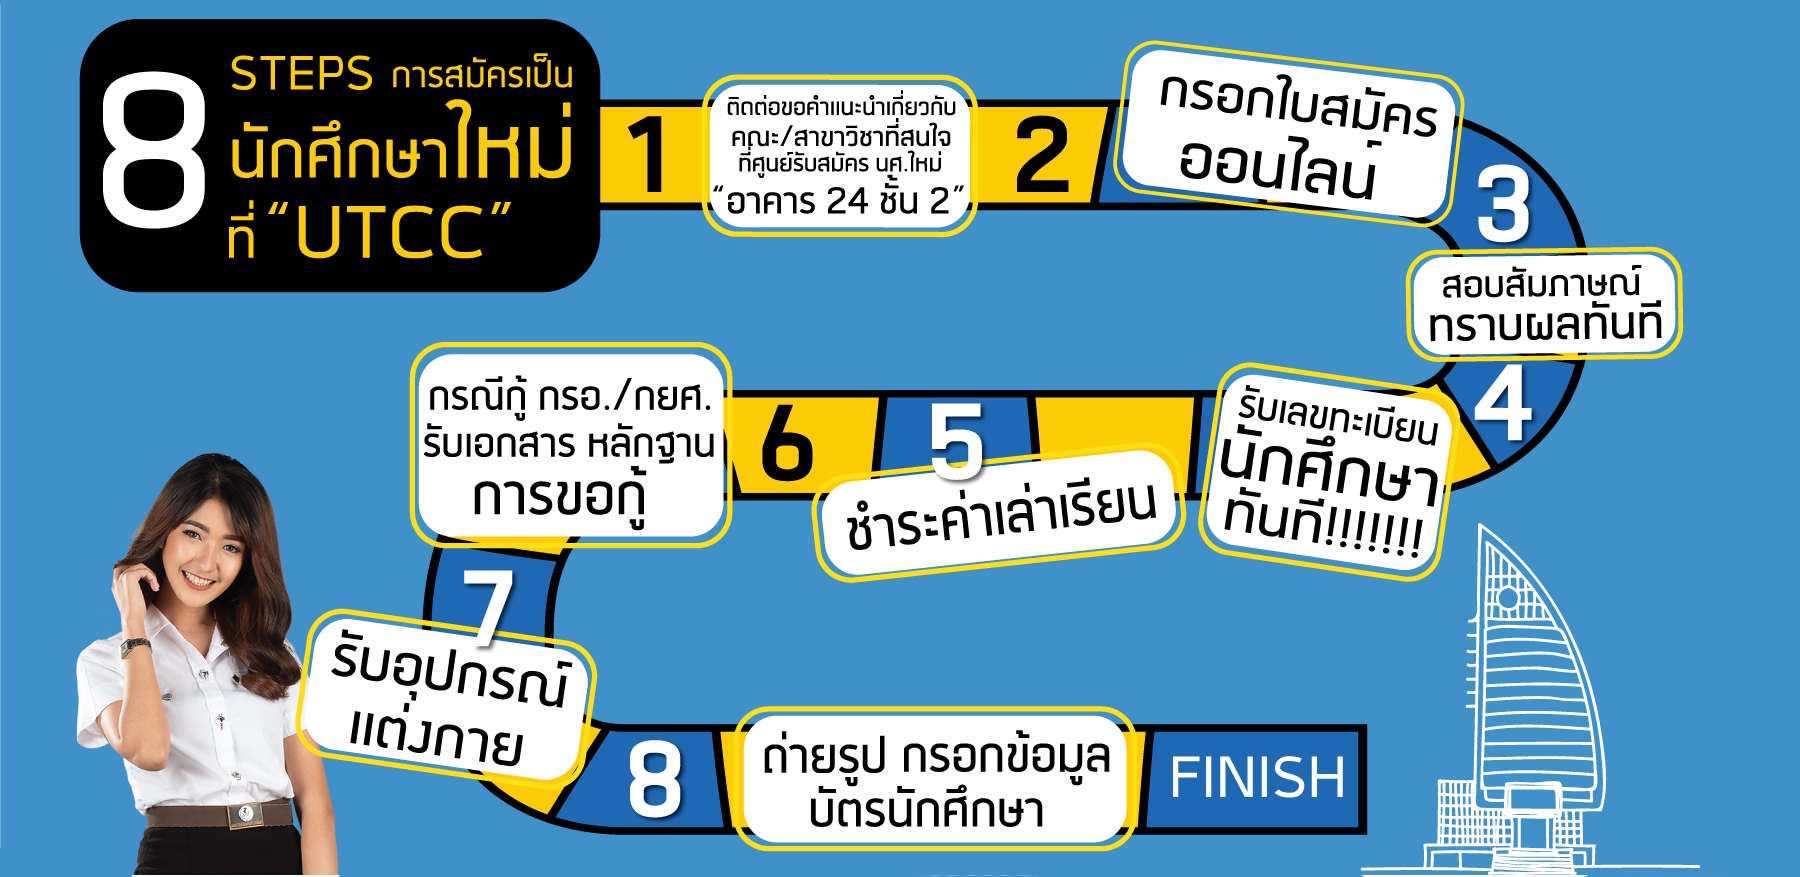 8 Steps การสมัครเป็นนักศึกษาใหม่ที่ UTCC ม.หอการค้าไทย